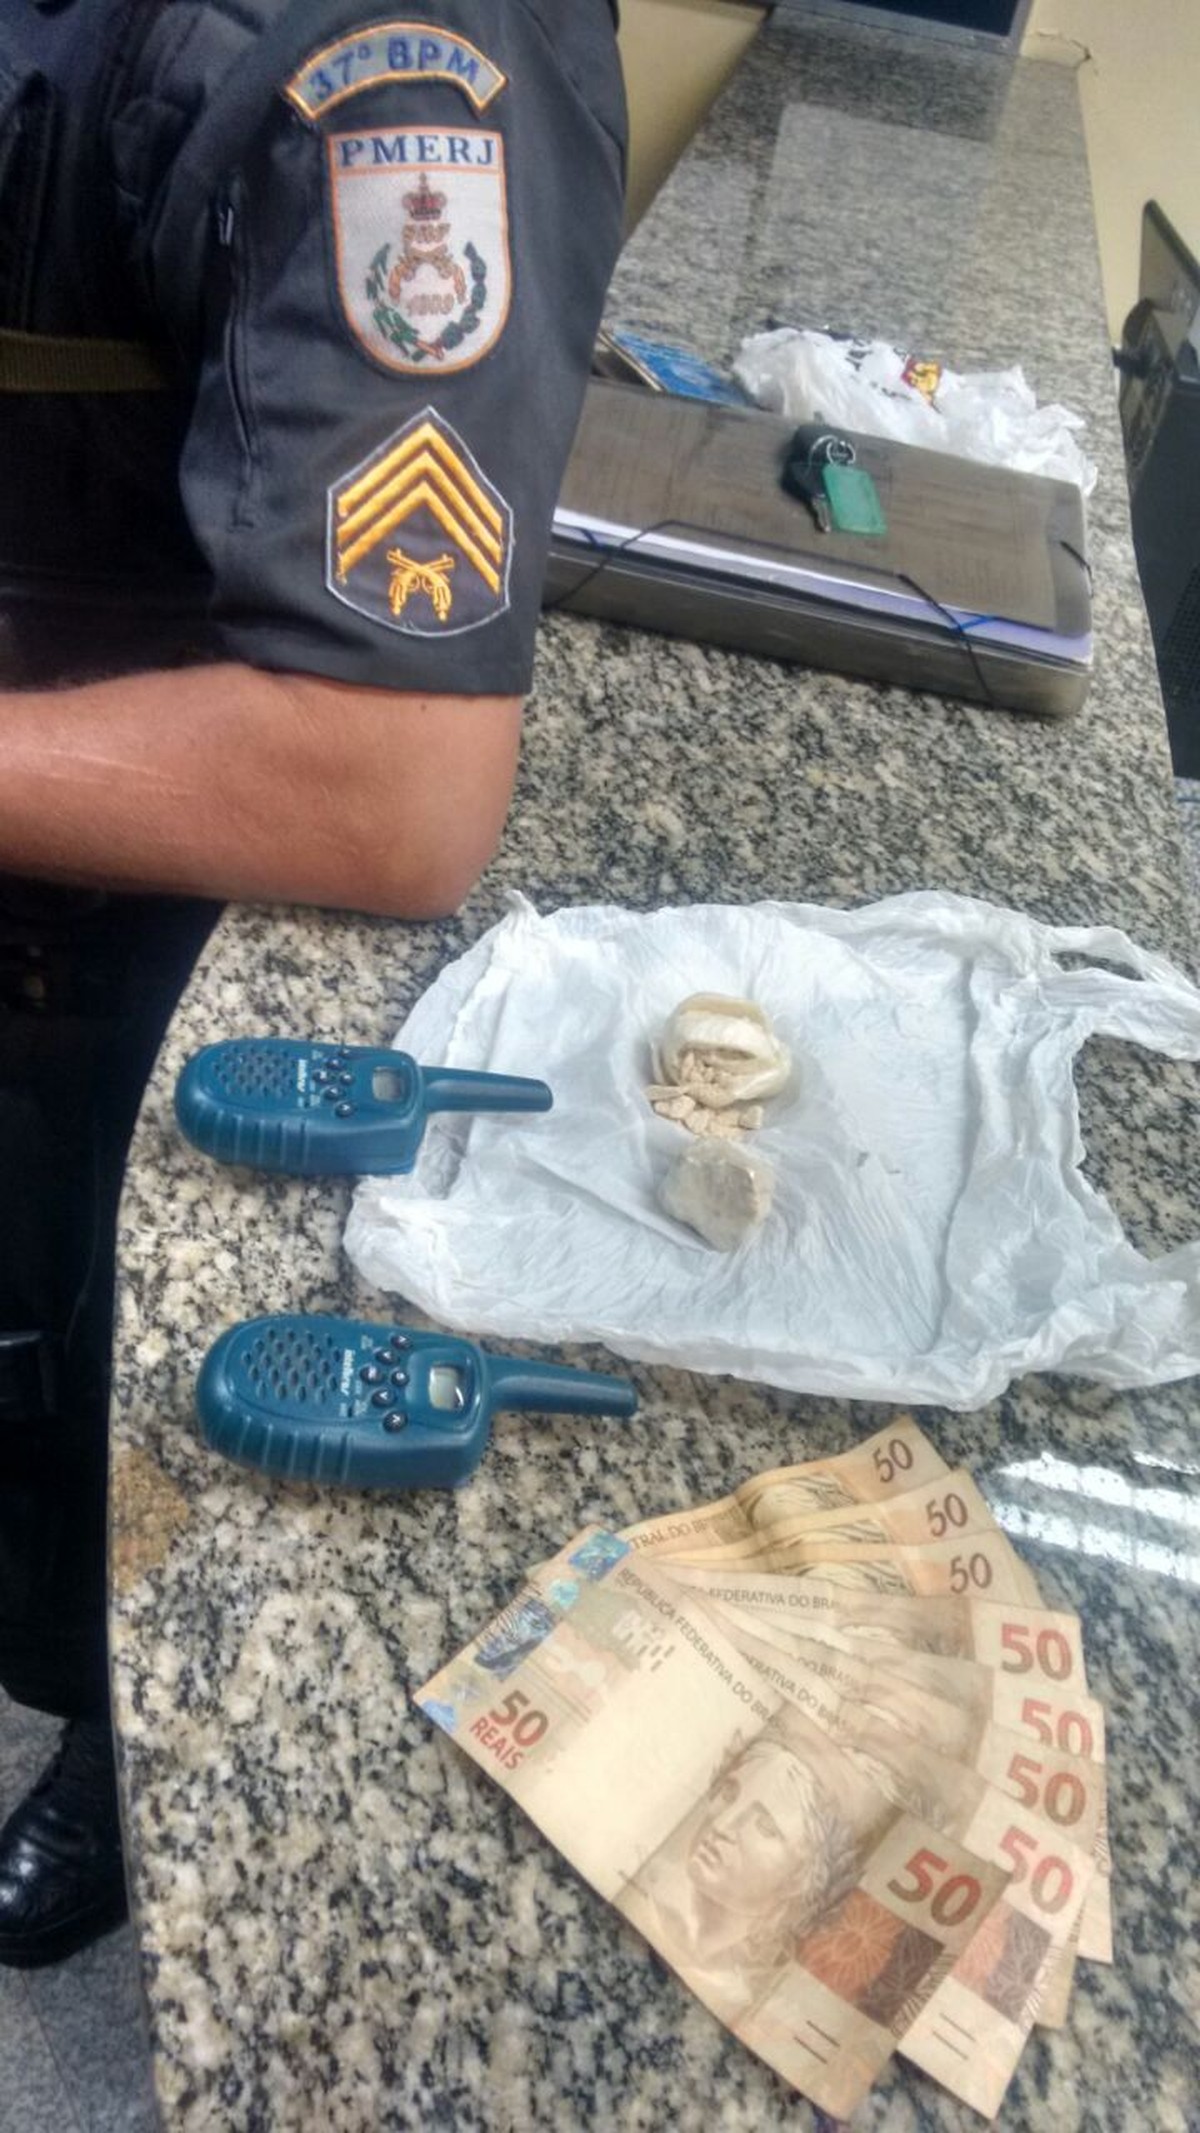 Suspeito de tráfico de drogas é preso em Penedo, Itatiaia, RJ - Globo.com